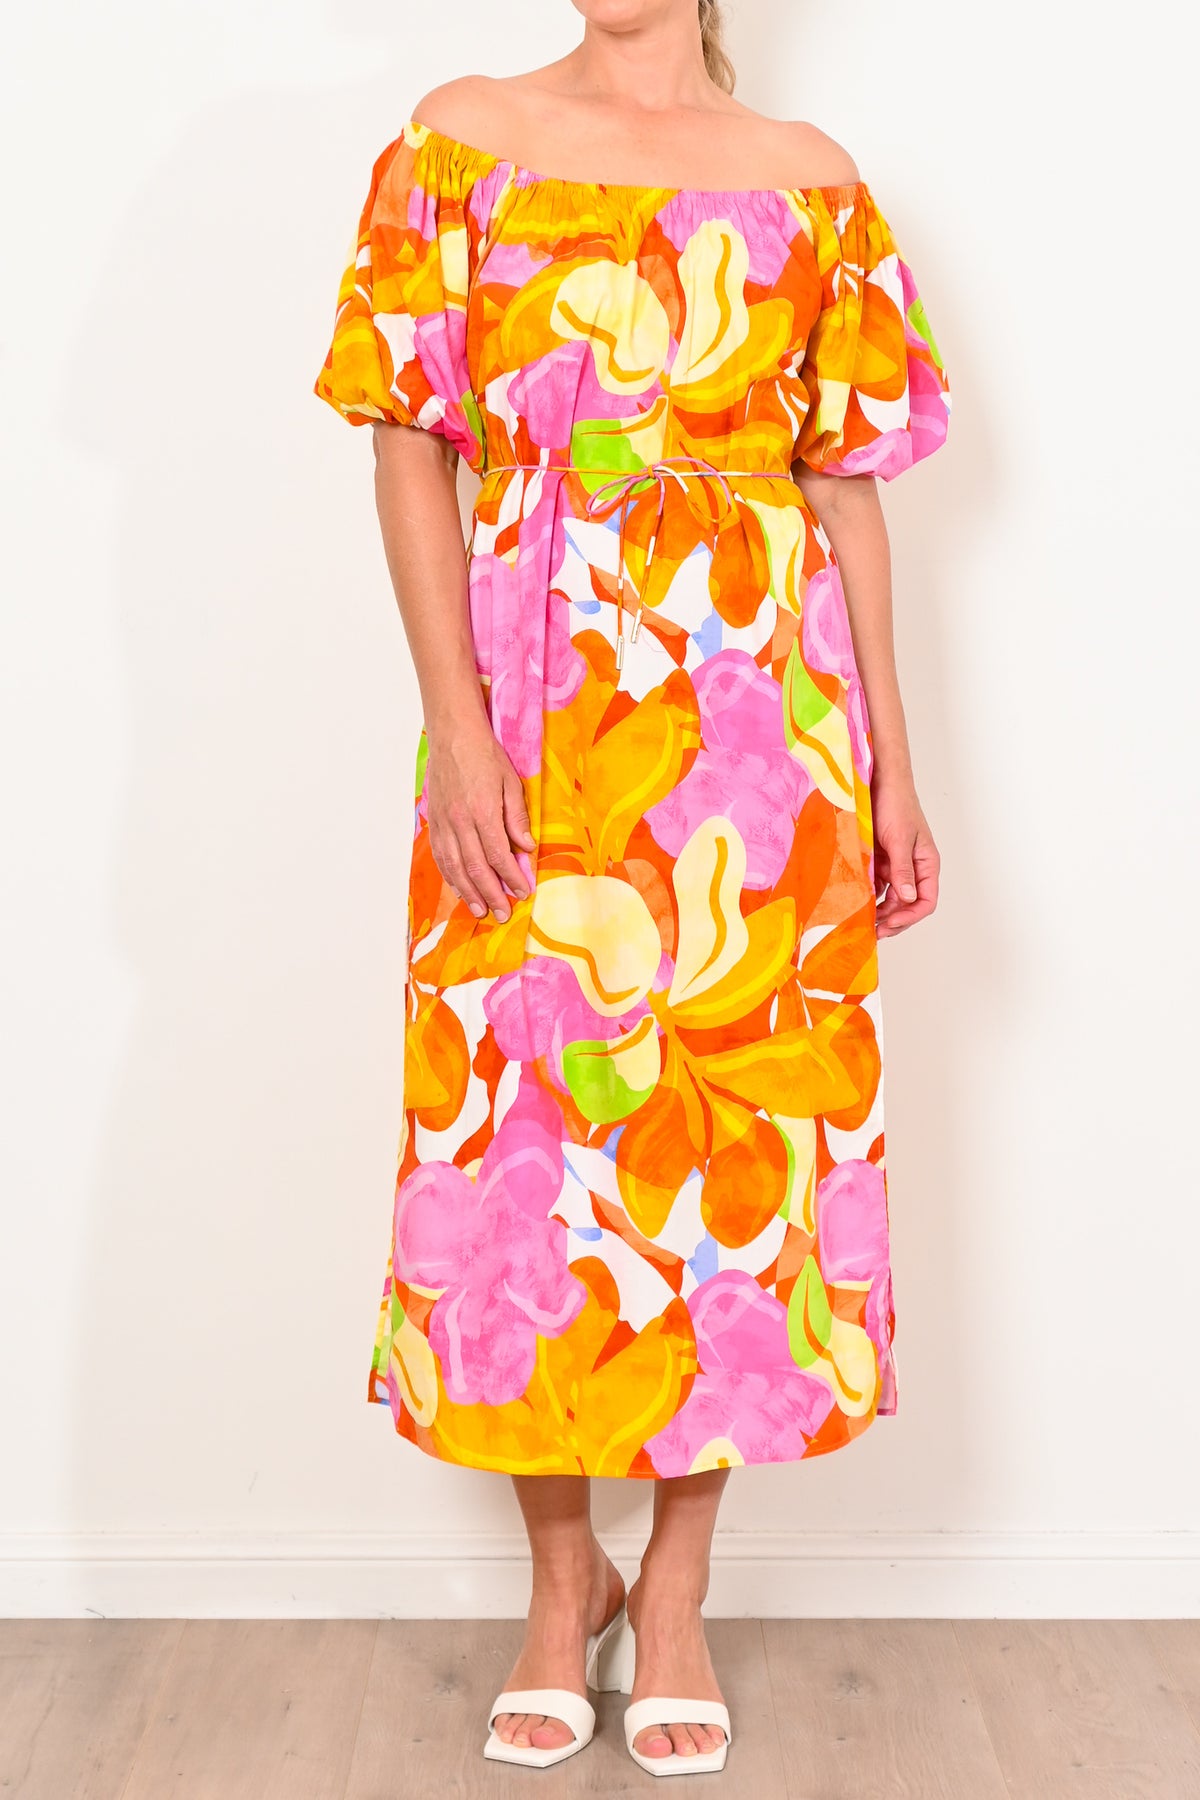 Kinney Olympia Dress Capri Abstract